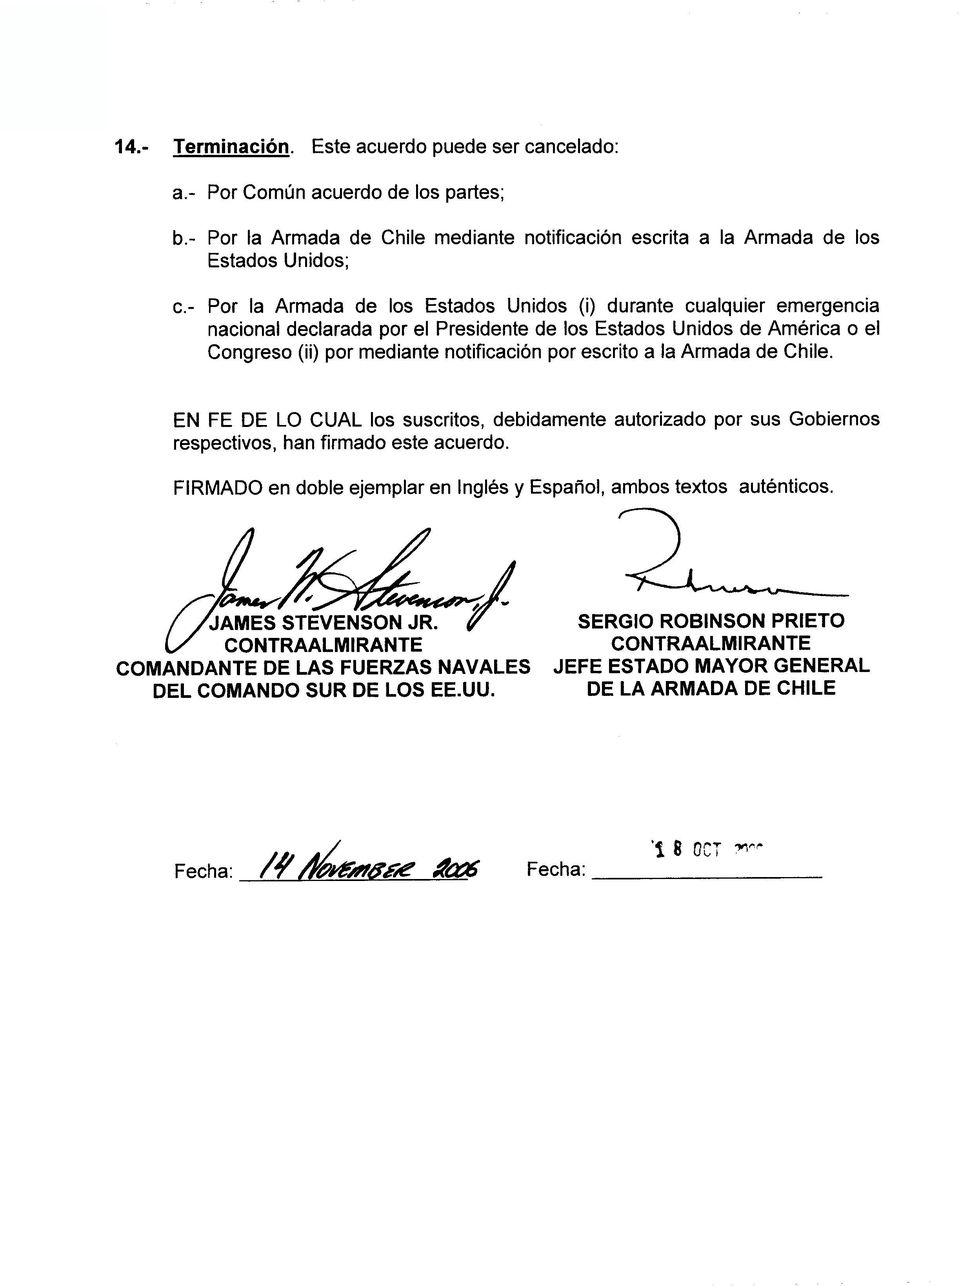 Ia Armada de Chile. EN FE DE LO CUAL los suscritos, debidamente autorizado por sus Gobiernos respectivos, han firmado este acuerdo.